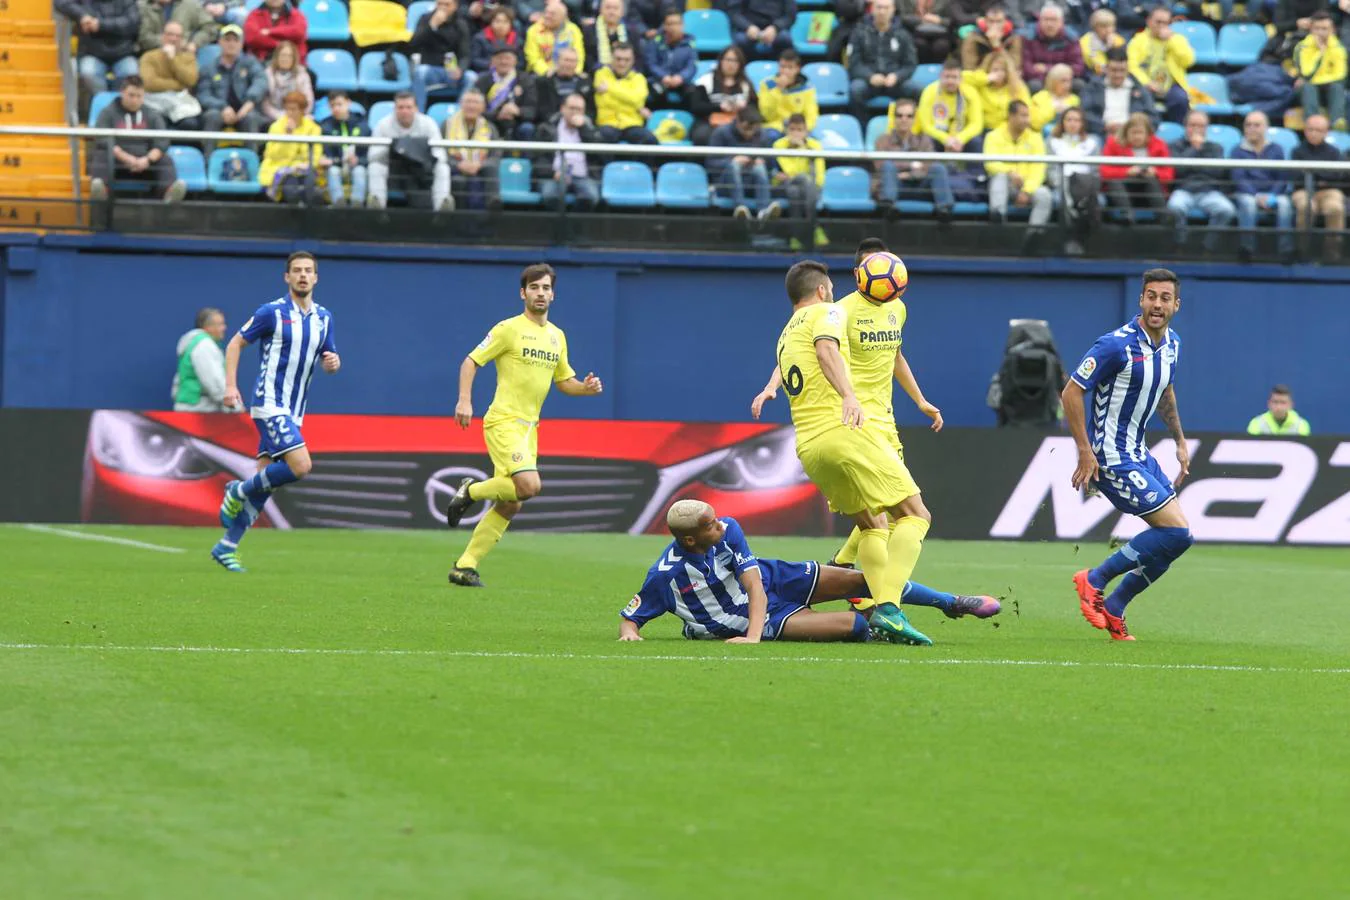 Villarreal 0 - Alavés 2